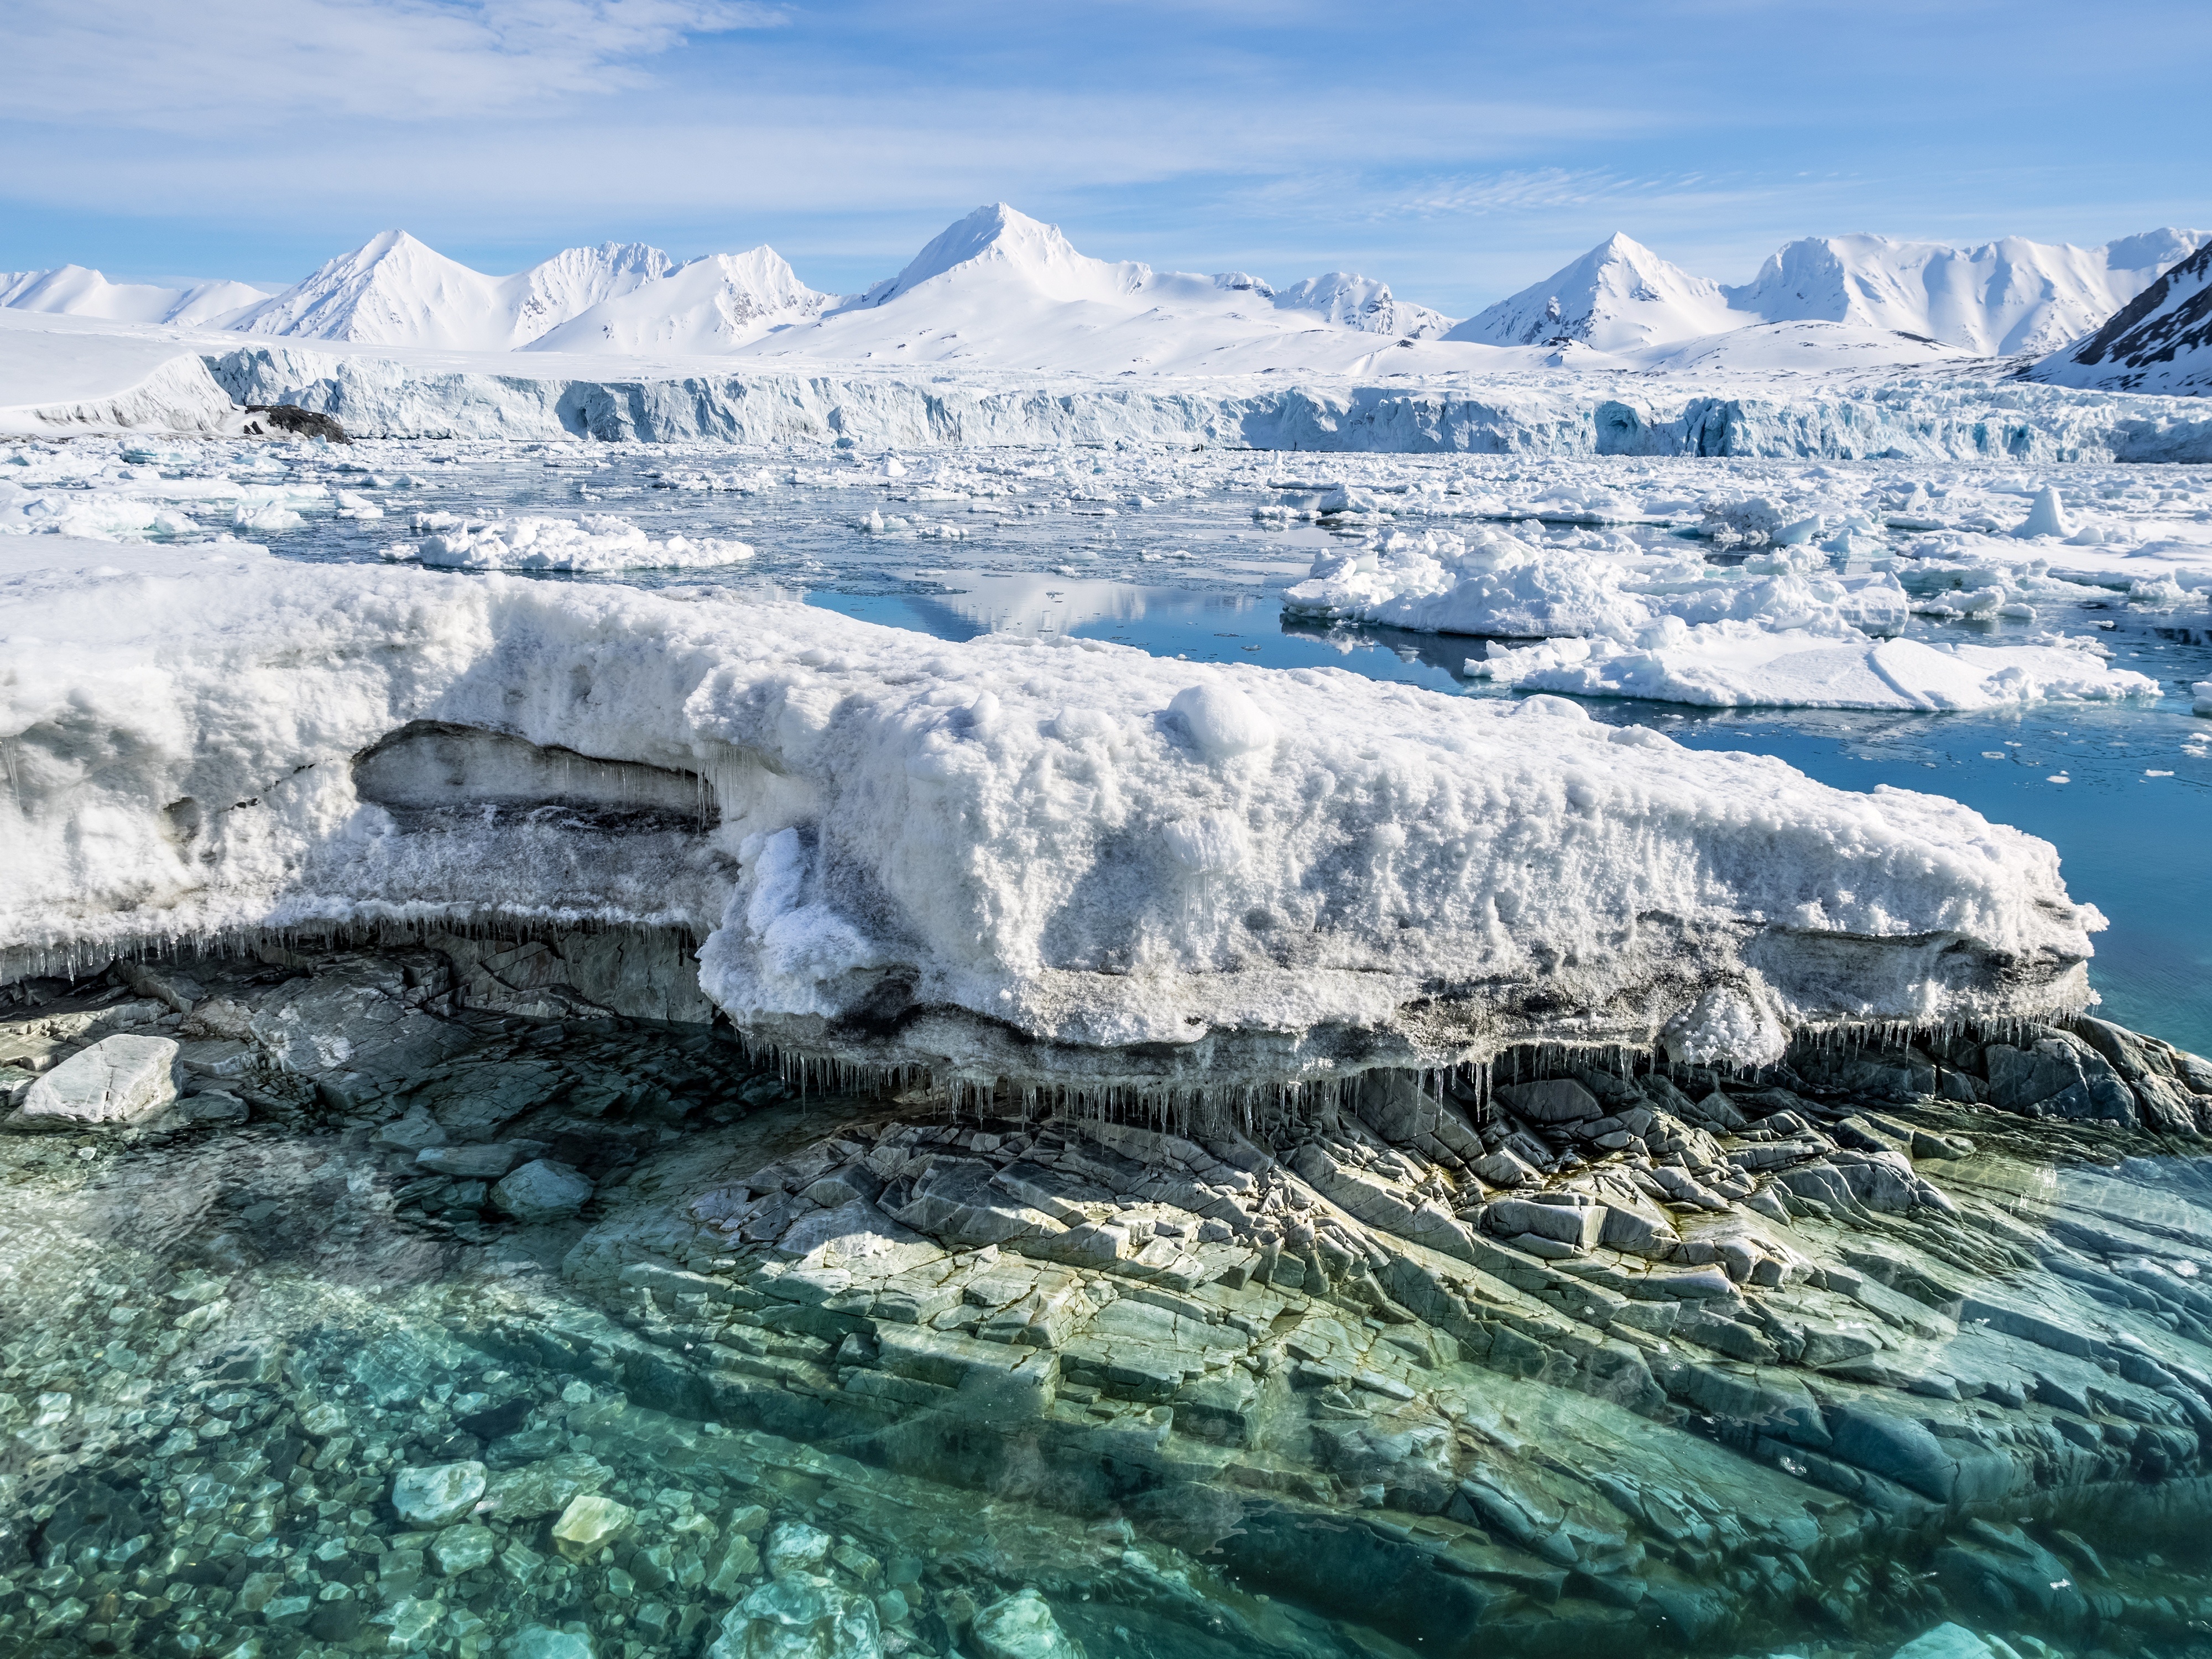 Des chercheurs ont entrepris d'écouter les entrailles d'un&nbsp;glacier en Norvège avec un sismomètre pour mieux comprendre ce qui s'y joue en son cœur, tout&nbsp;en profondeur.&nbsp;©&nbsp;Incredible Arctic, Adobe Stock